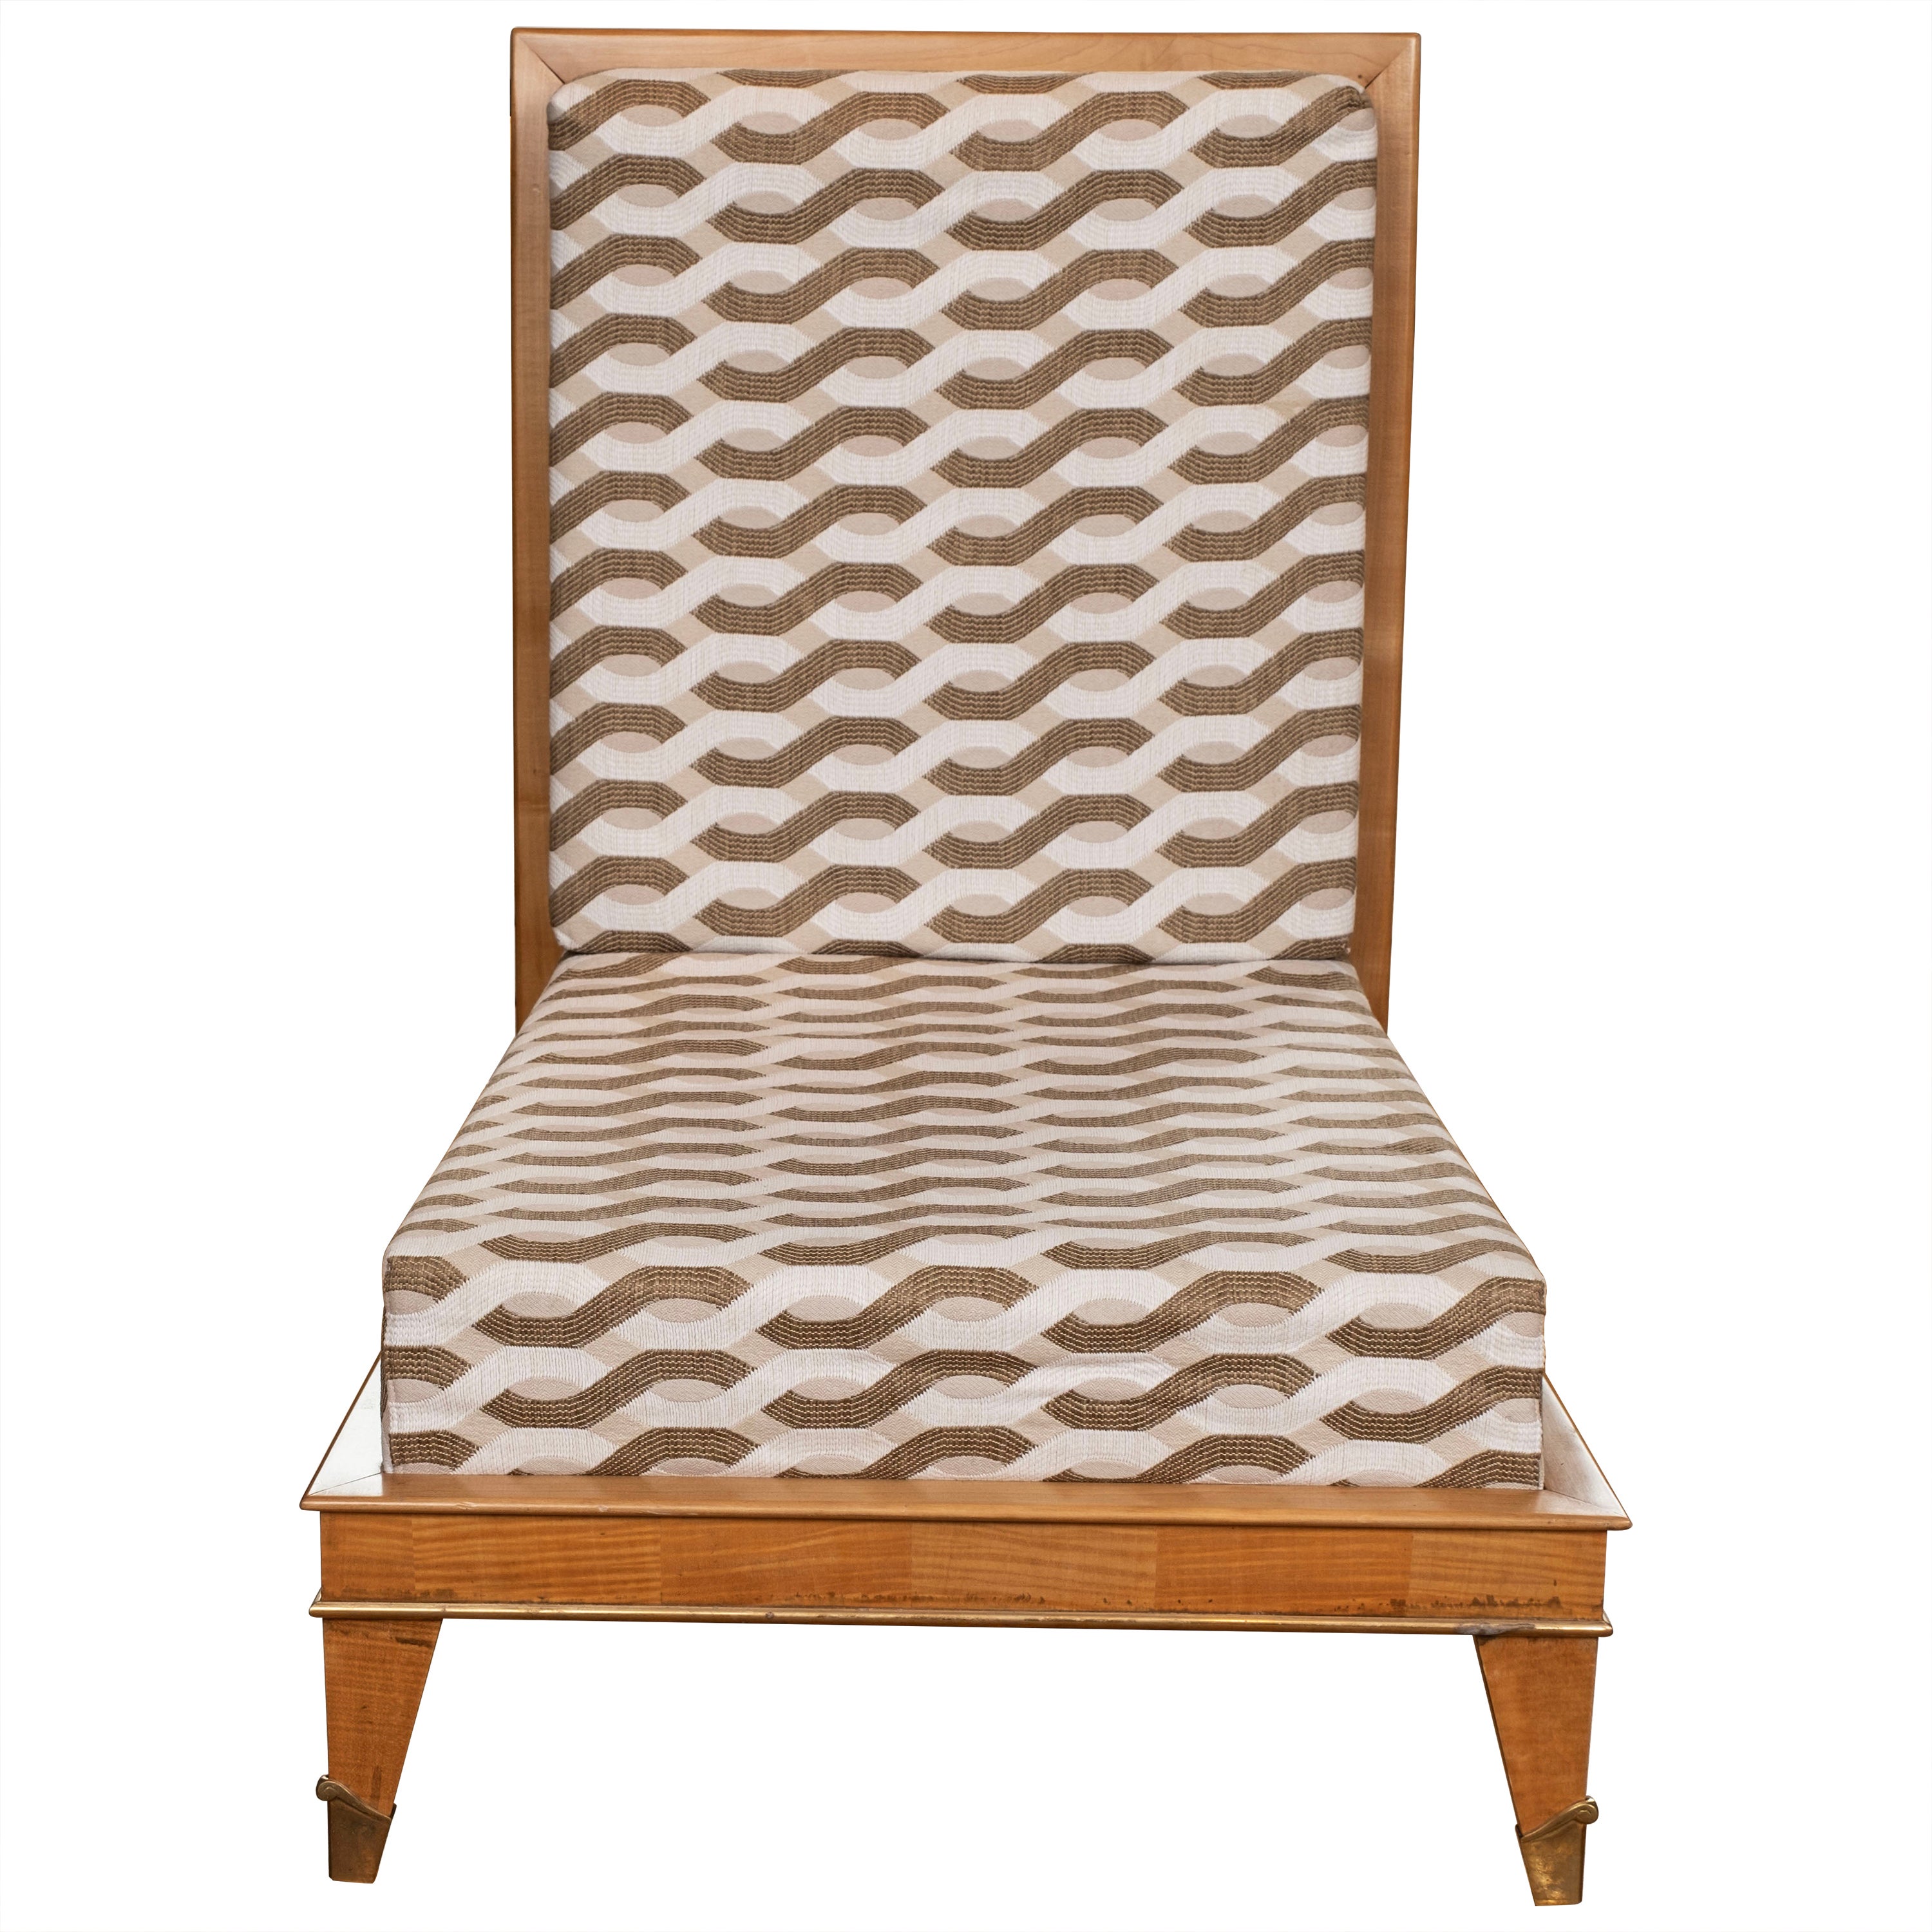 Chaise moderne française attribuée à Maurice Jallot.
Cette chaise, chaise d'appoint, chauffeuse ou pantoufle de style Art Déco ou Art Moderne français est faite de sycomore et a été récemment recouverte d'un magnifique tissu...
imprimé